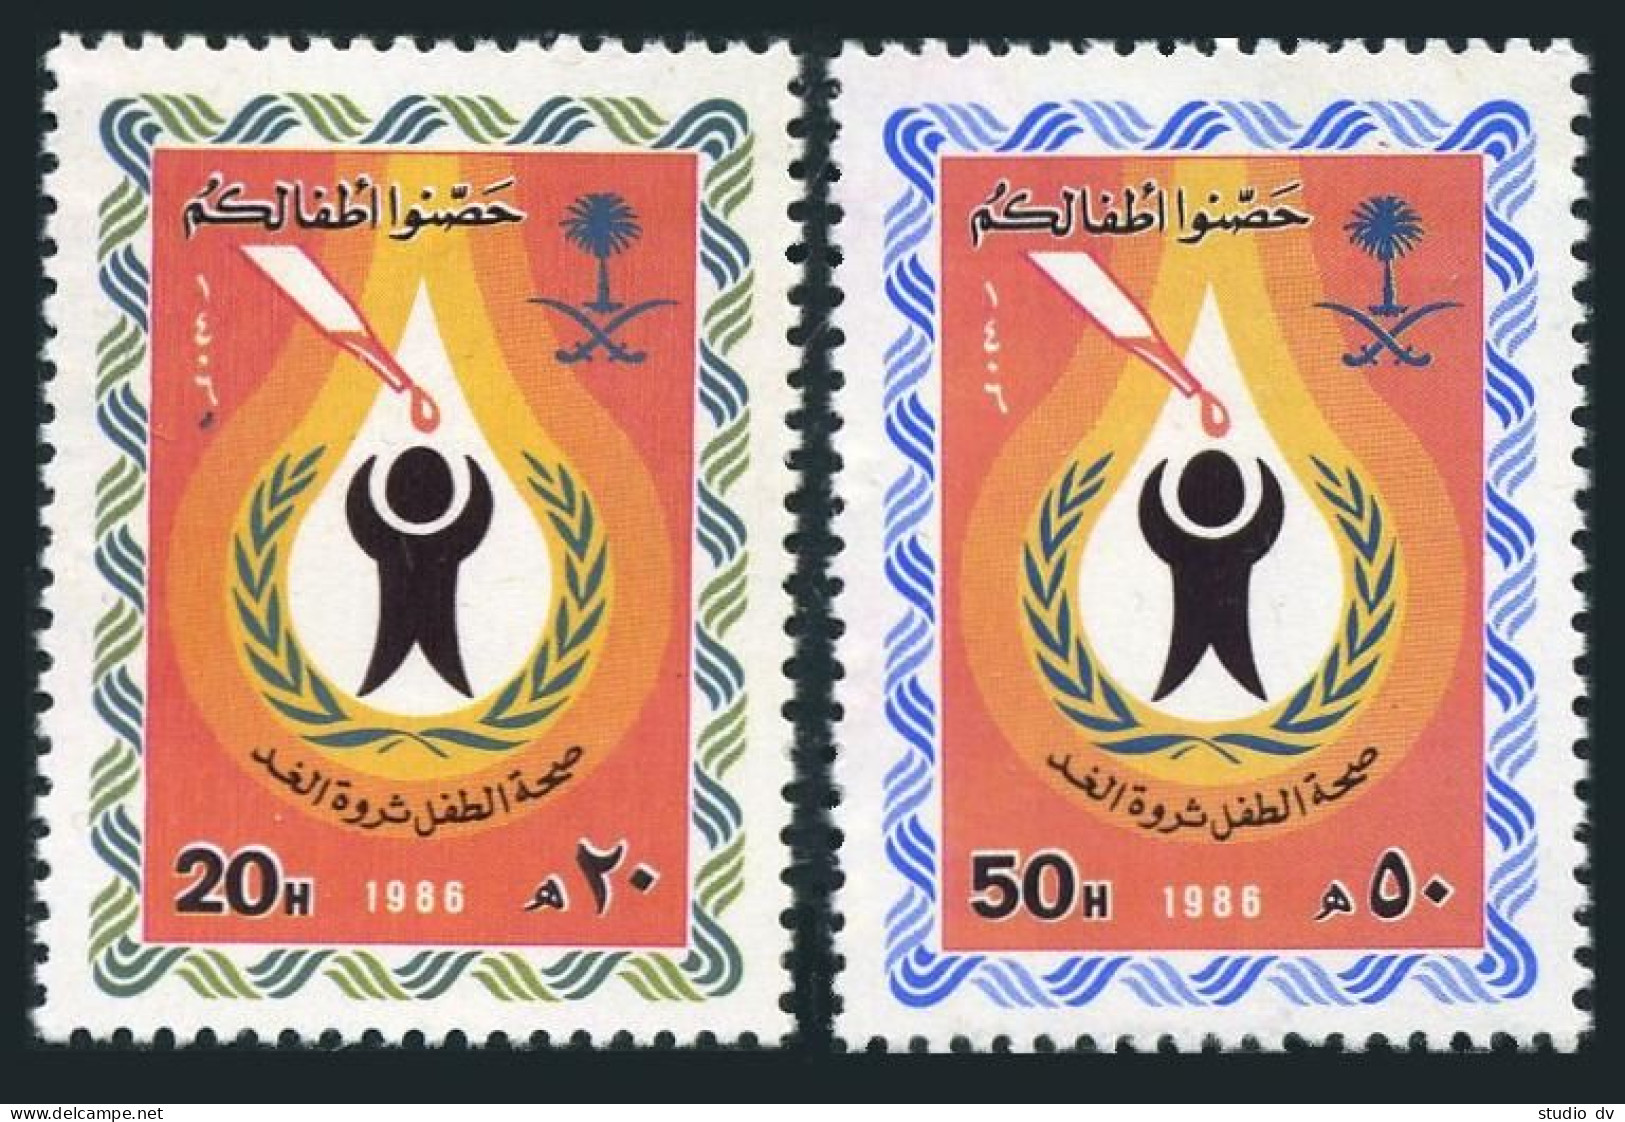 Saudi Arabia 974-975,MNH.Michel 837-838. UN Child Survival Campaign,1986. - Arabia Saudita